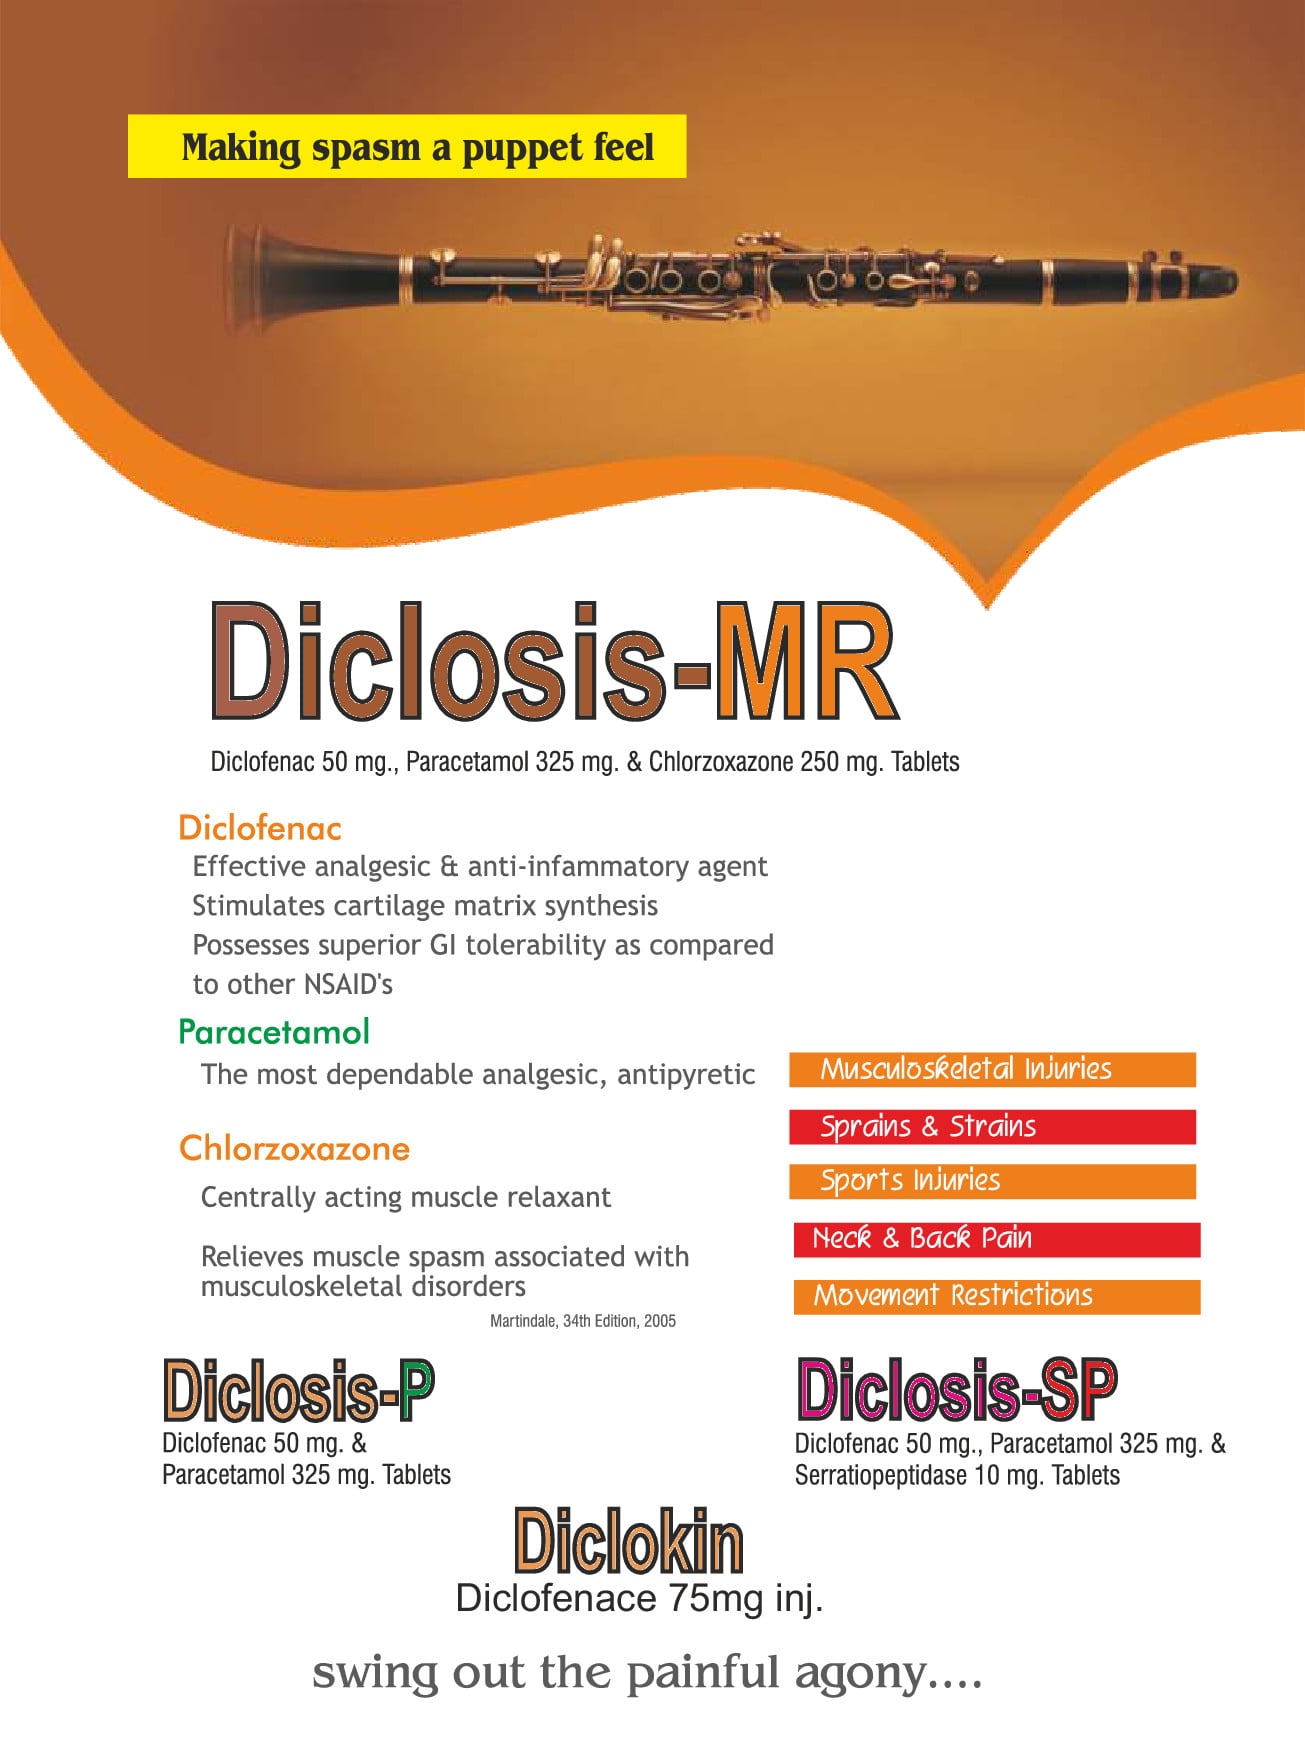 Diclosis-MR